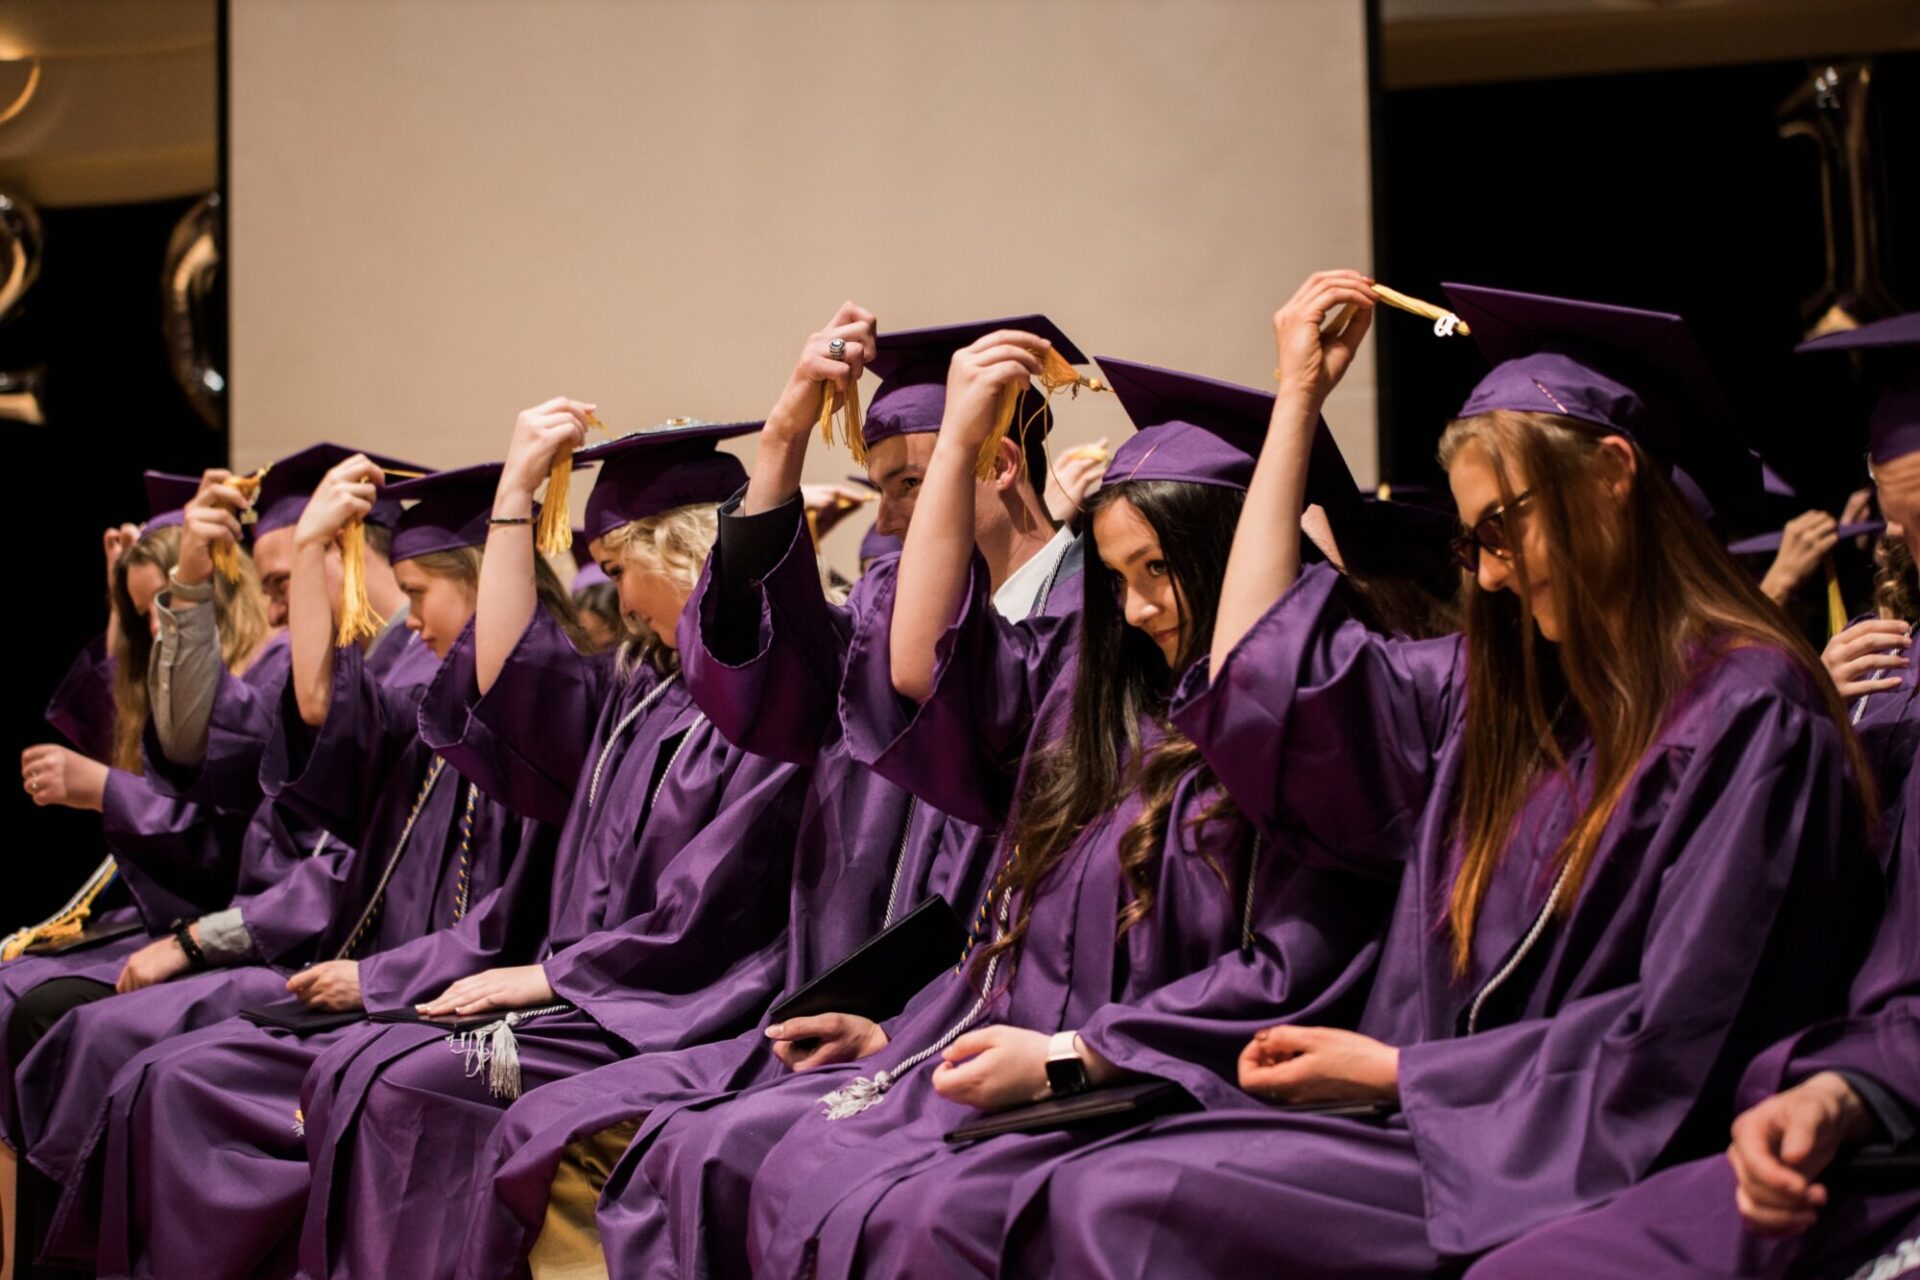 Recent graduates touching their square academic cap